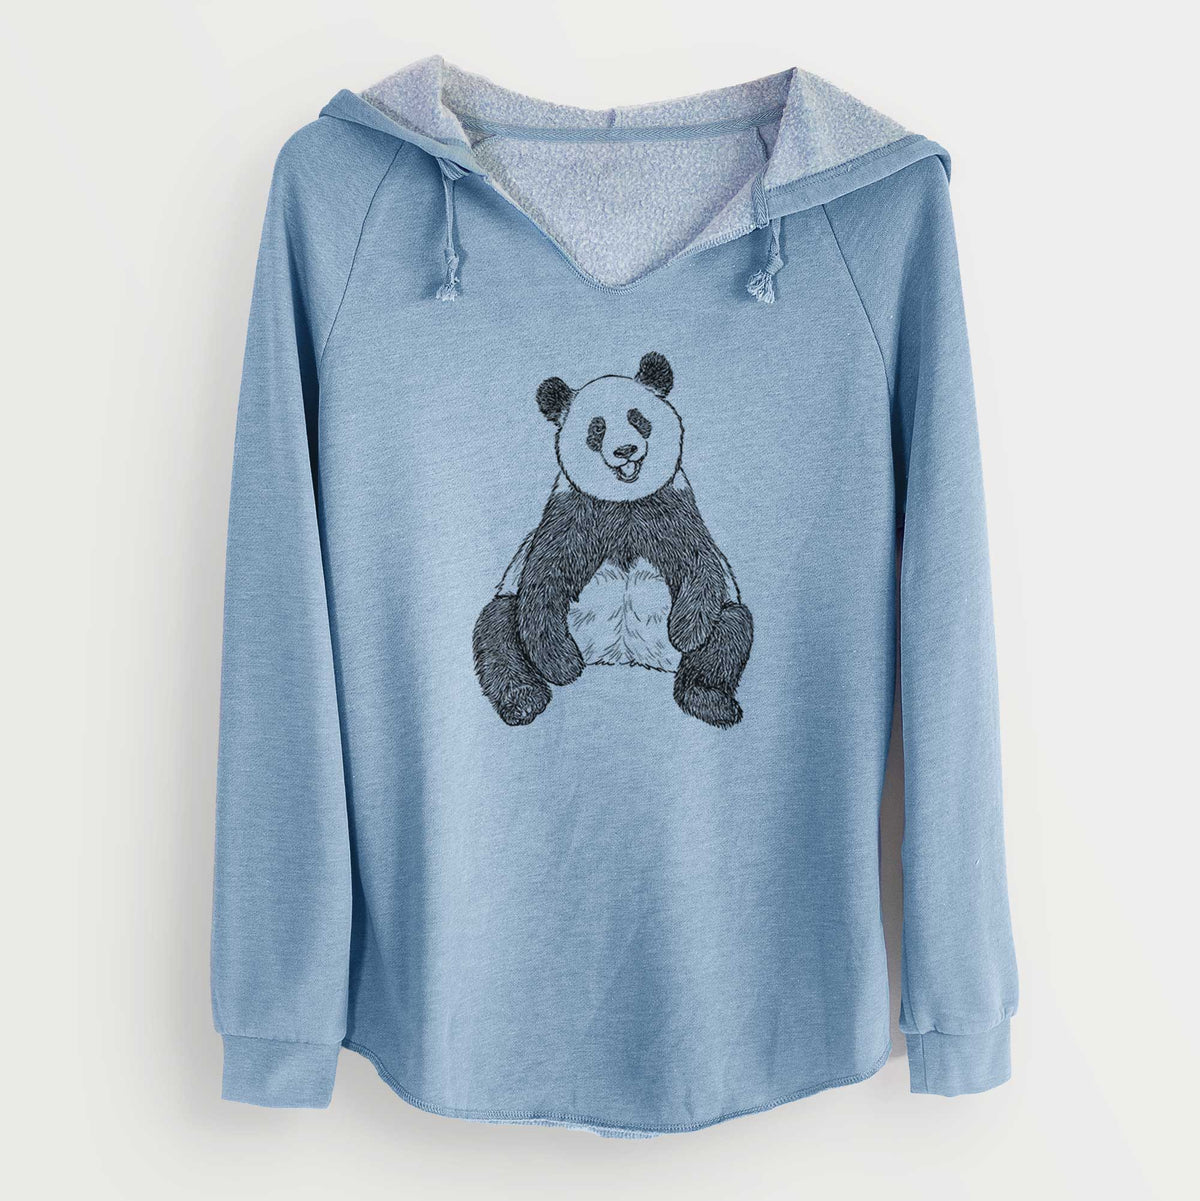 Ailuropoda melanoleuca - Giant Panda Sitting - Cali Wave Hooded Sweatshirt